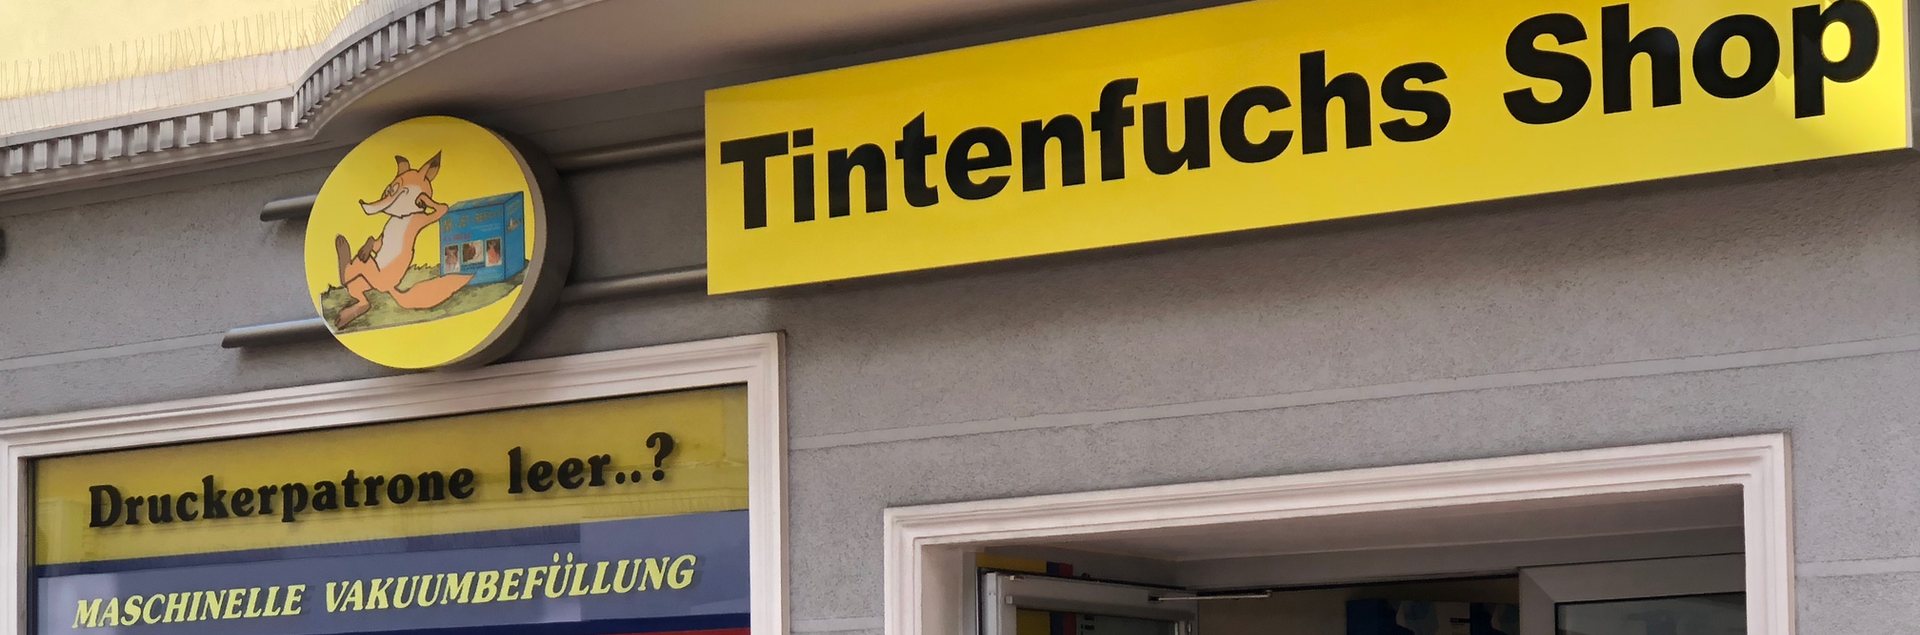 Tintenfuchs-Shop